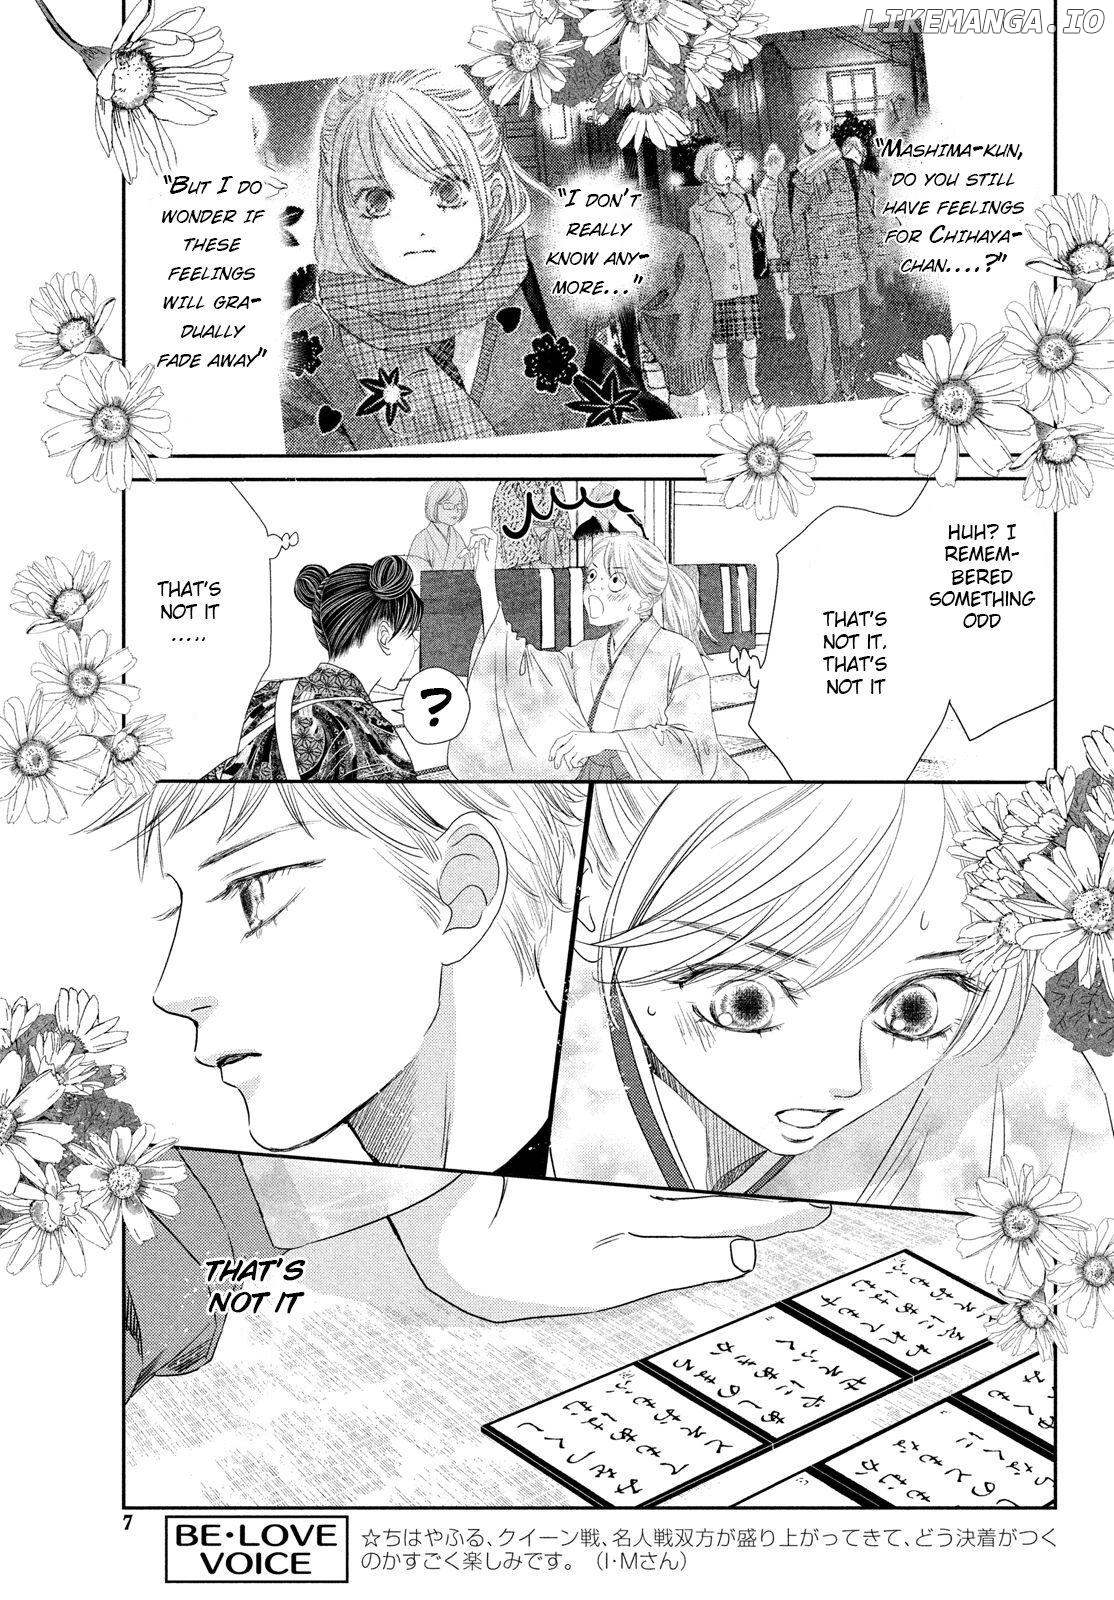 Chihayafuru chapter 234 - page 5